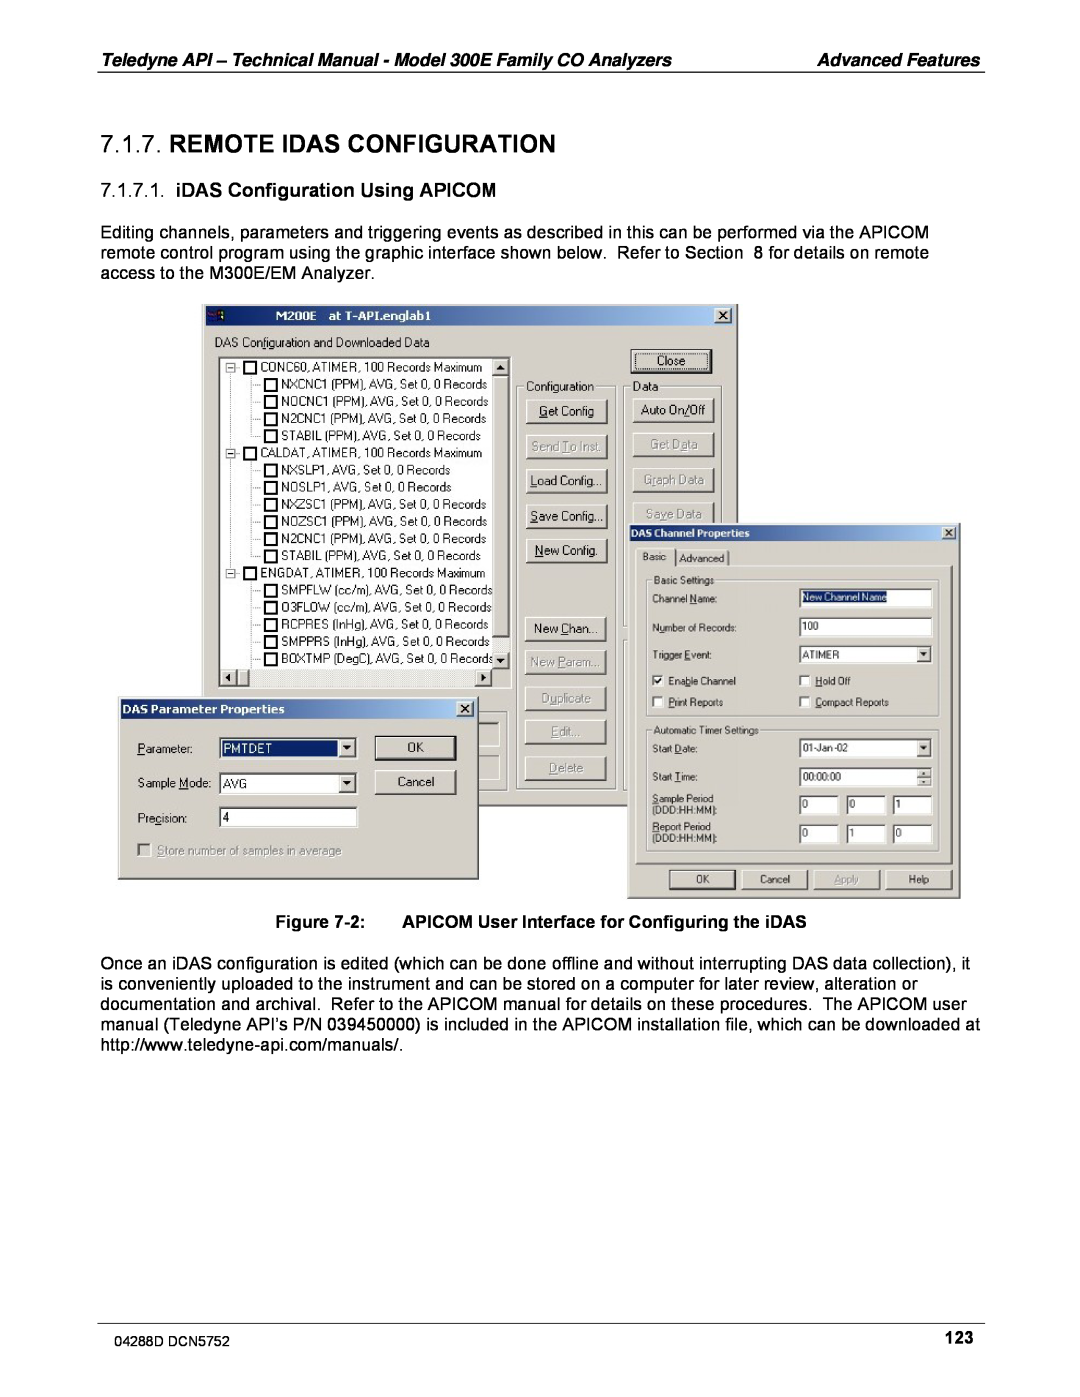 Teledyne M300EM operation manual Remote Idas Configuration, iDAS Configuration Using APICOM 